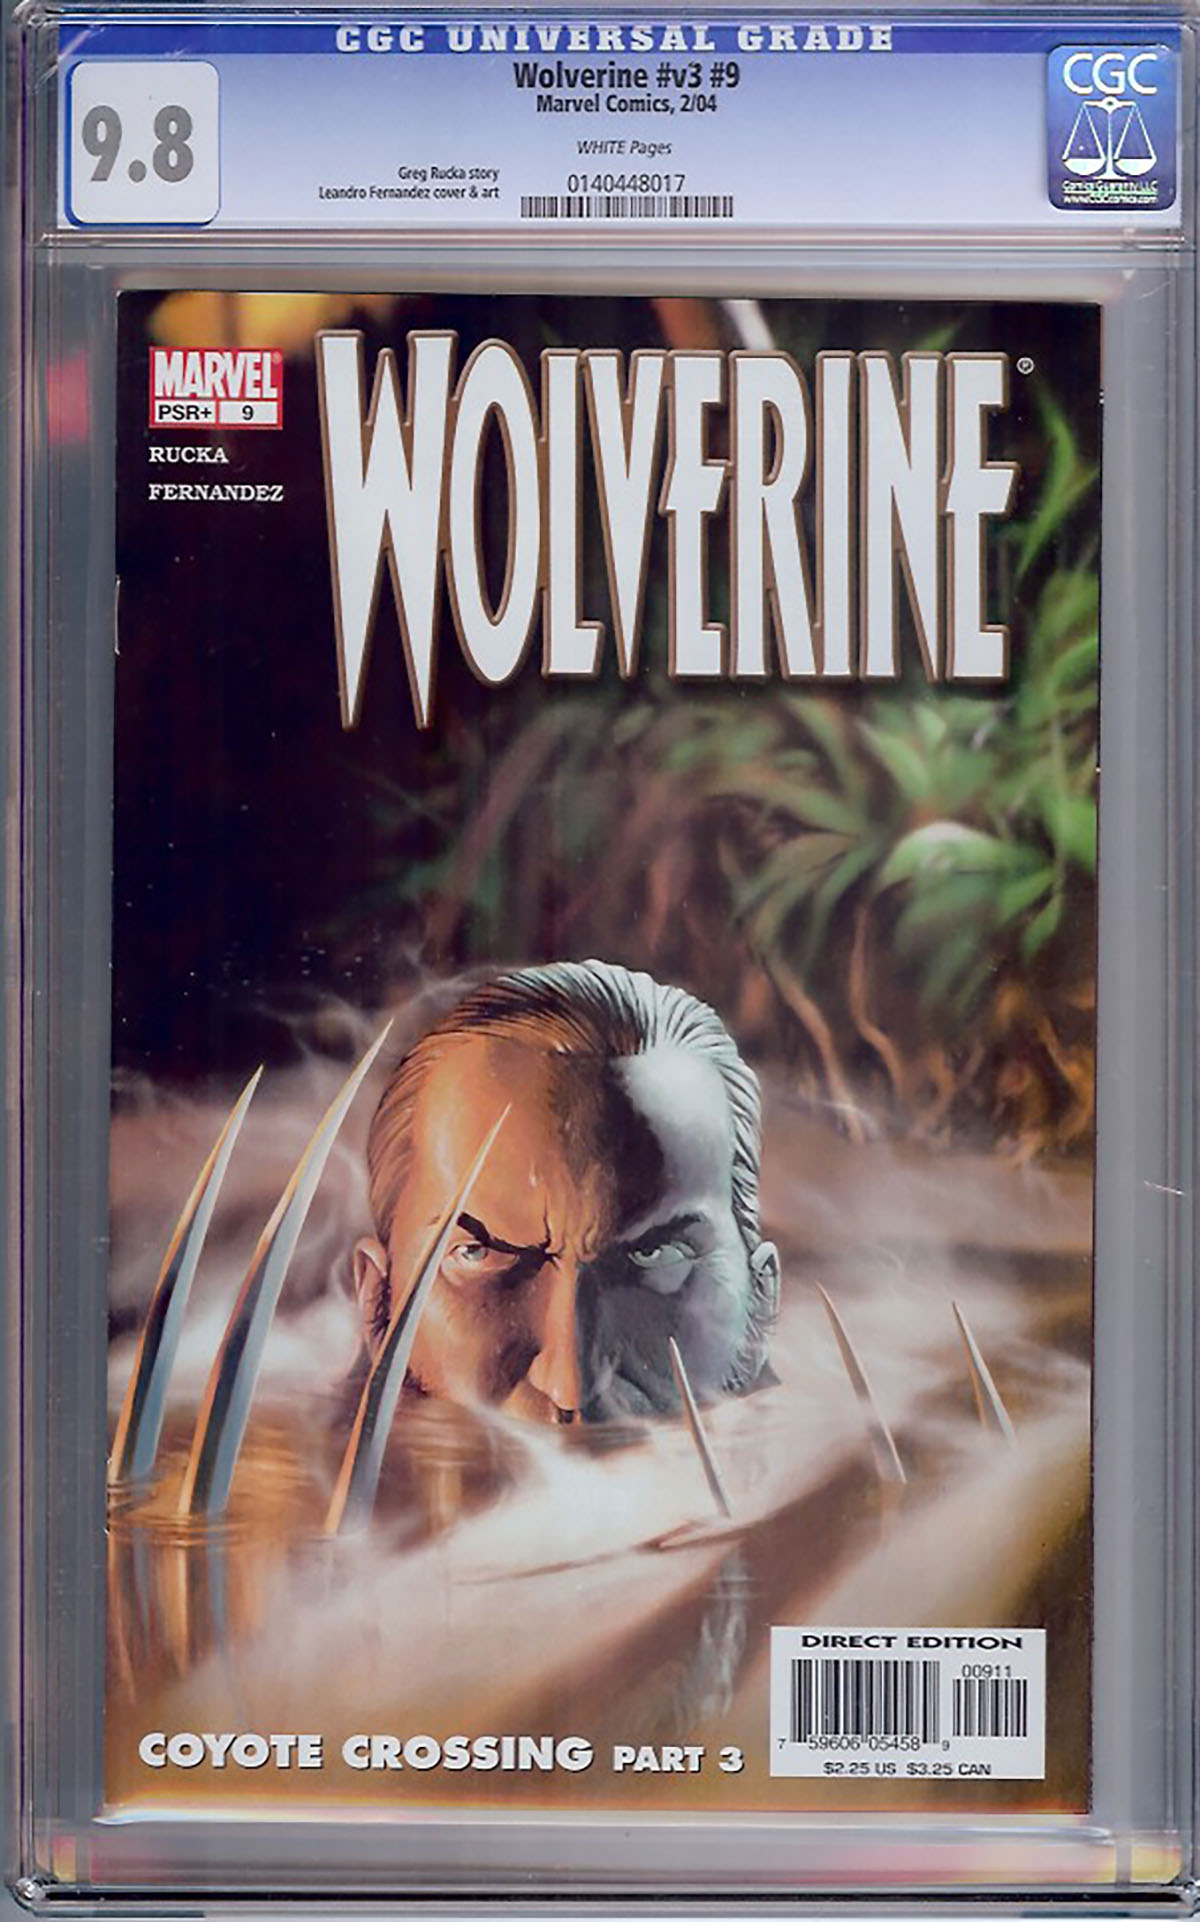 Wolverine Vol 3 #9 CGC 9.8 w